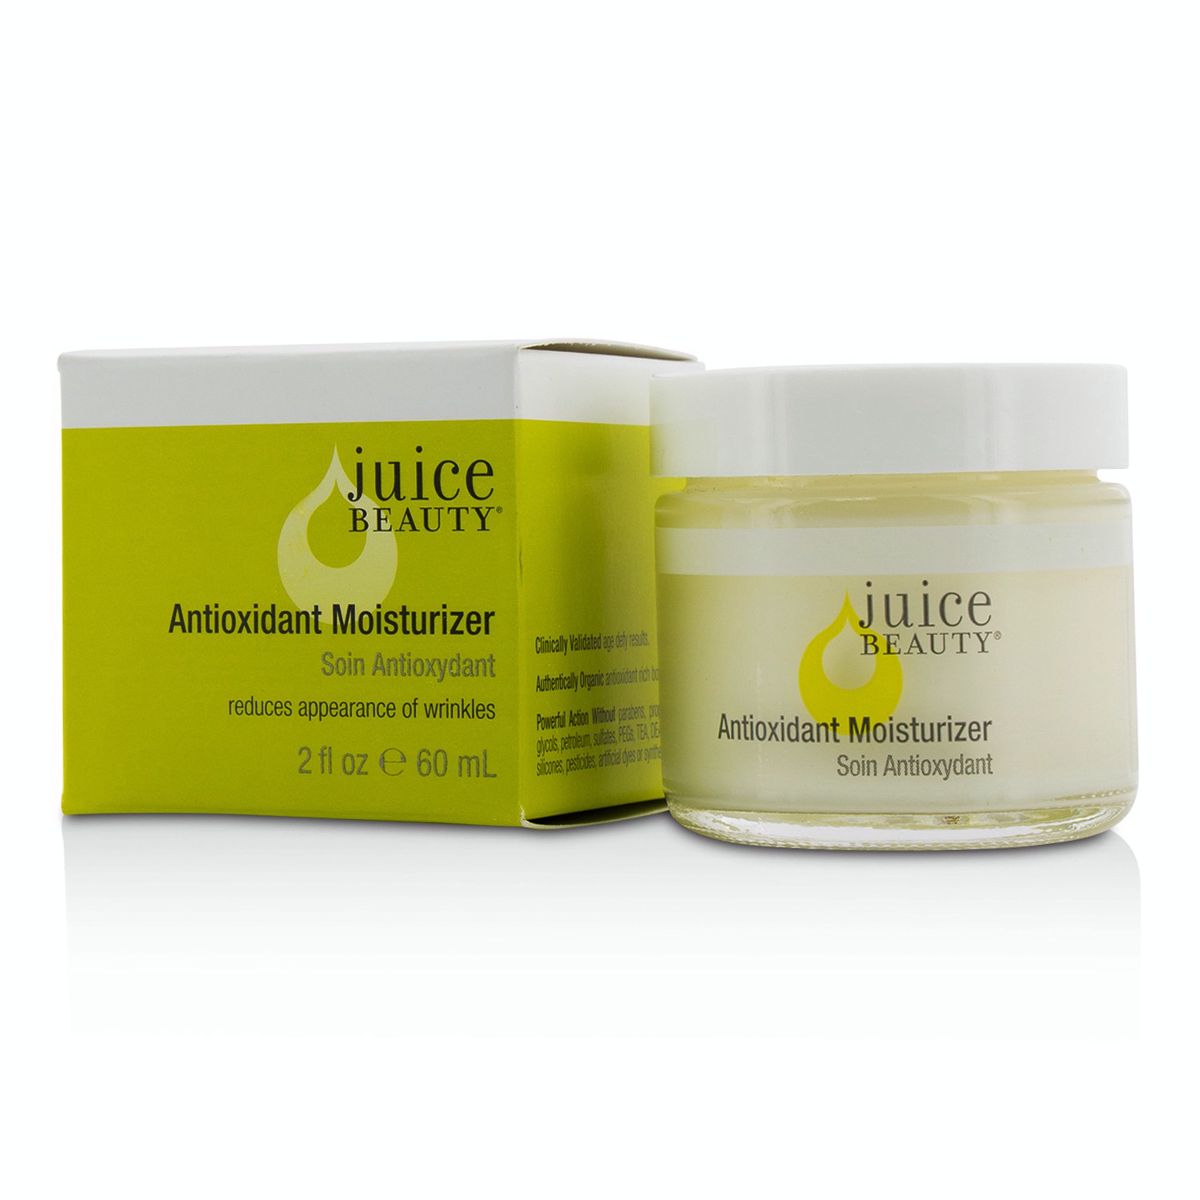 Antioxidant Moisturizer Juice Beauty Image